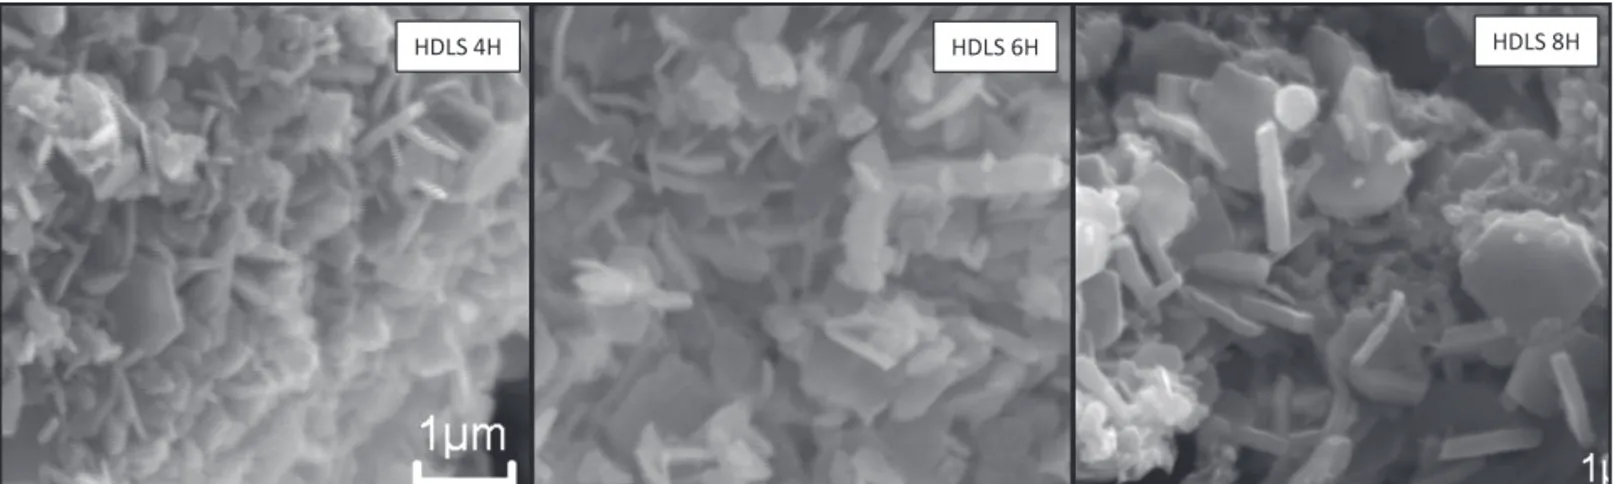 Figura 6: Micrograﬁ  as obtidas por microscopia eletrônica de varredura das amostras HDL 4H, HDL 6H e HDL 8H.